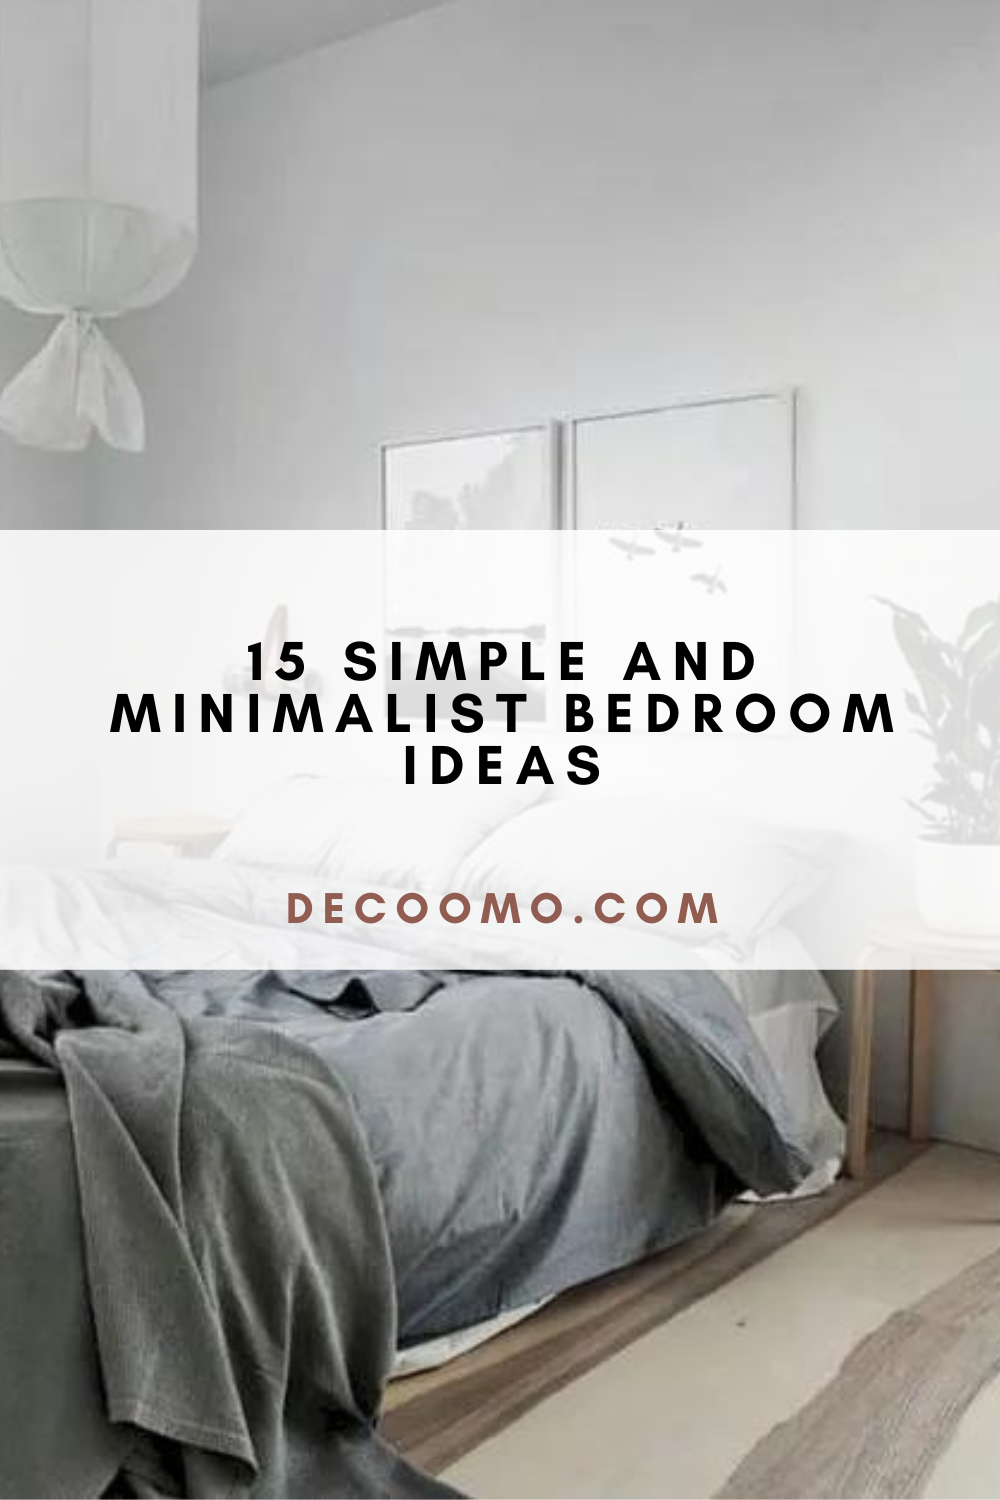 15 Simple And Minimalist Bedroom Ideas - DECOOMO